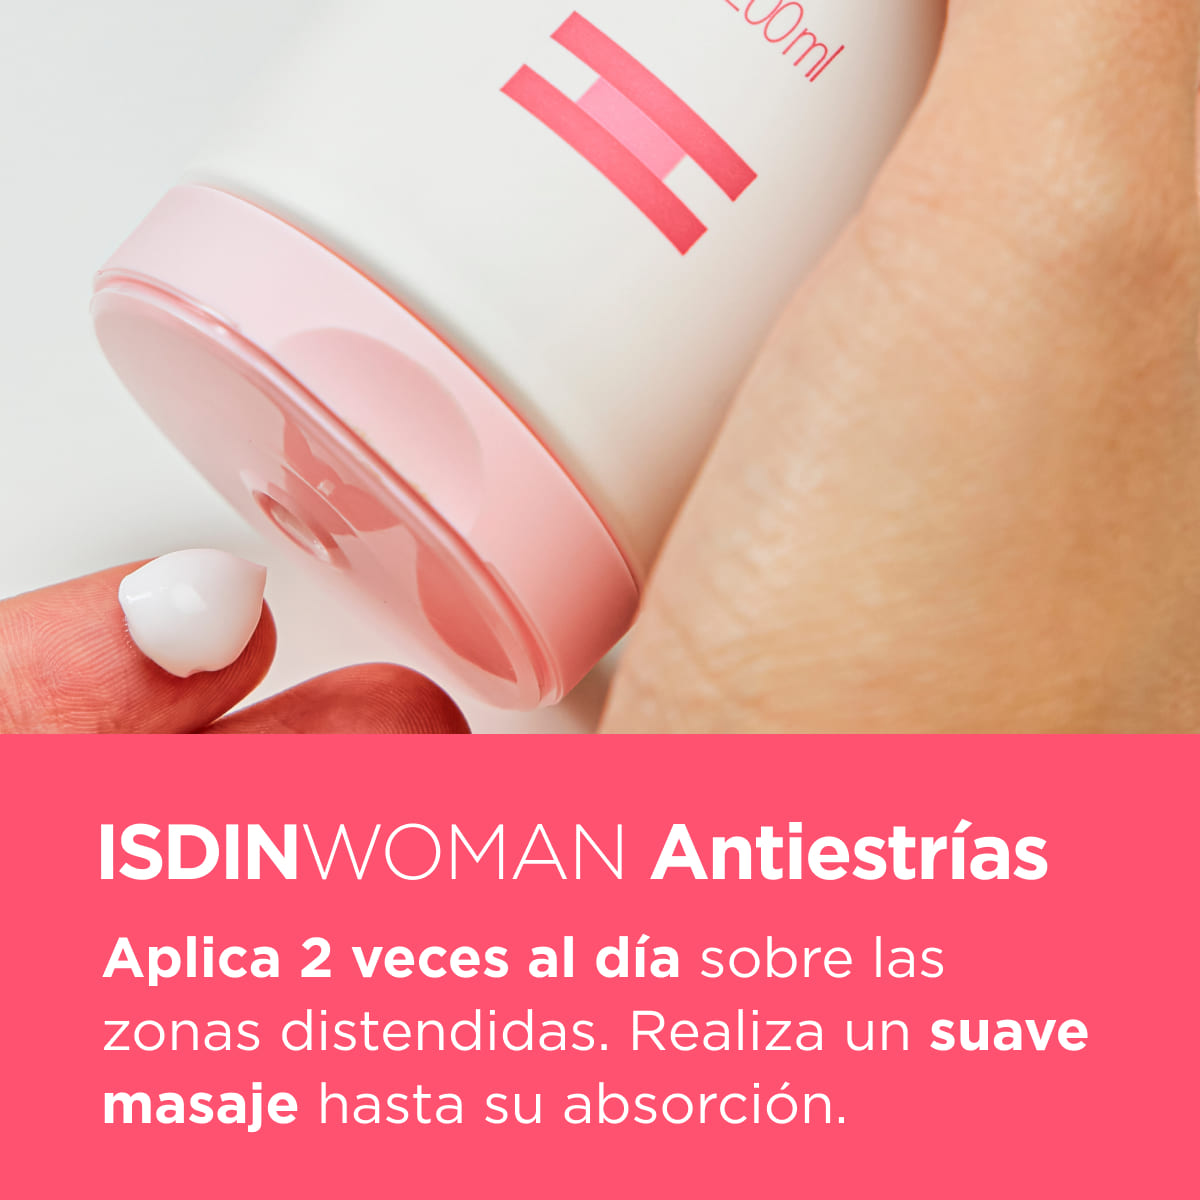 ISDIN WOMAN Antiestrías